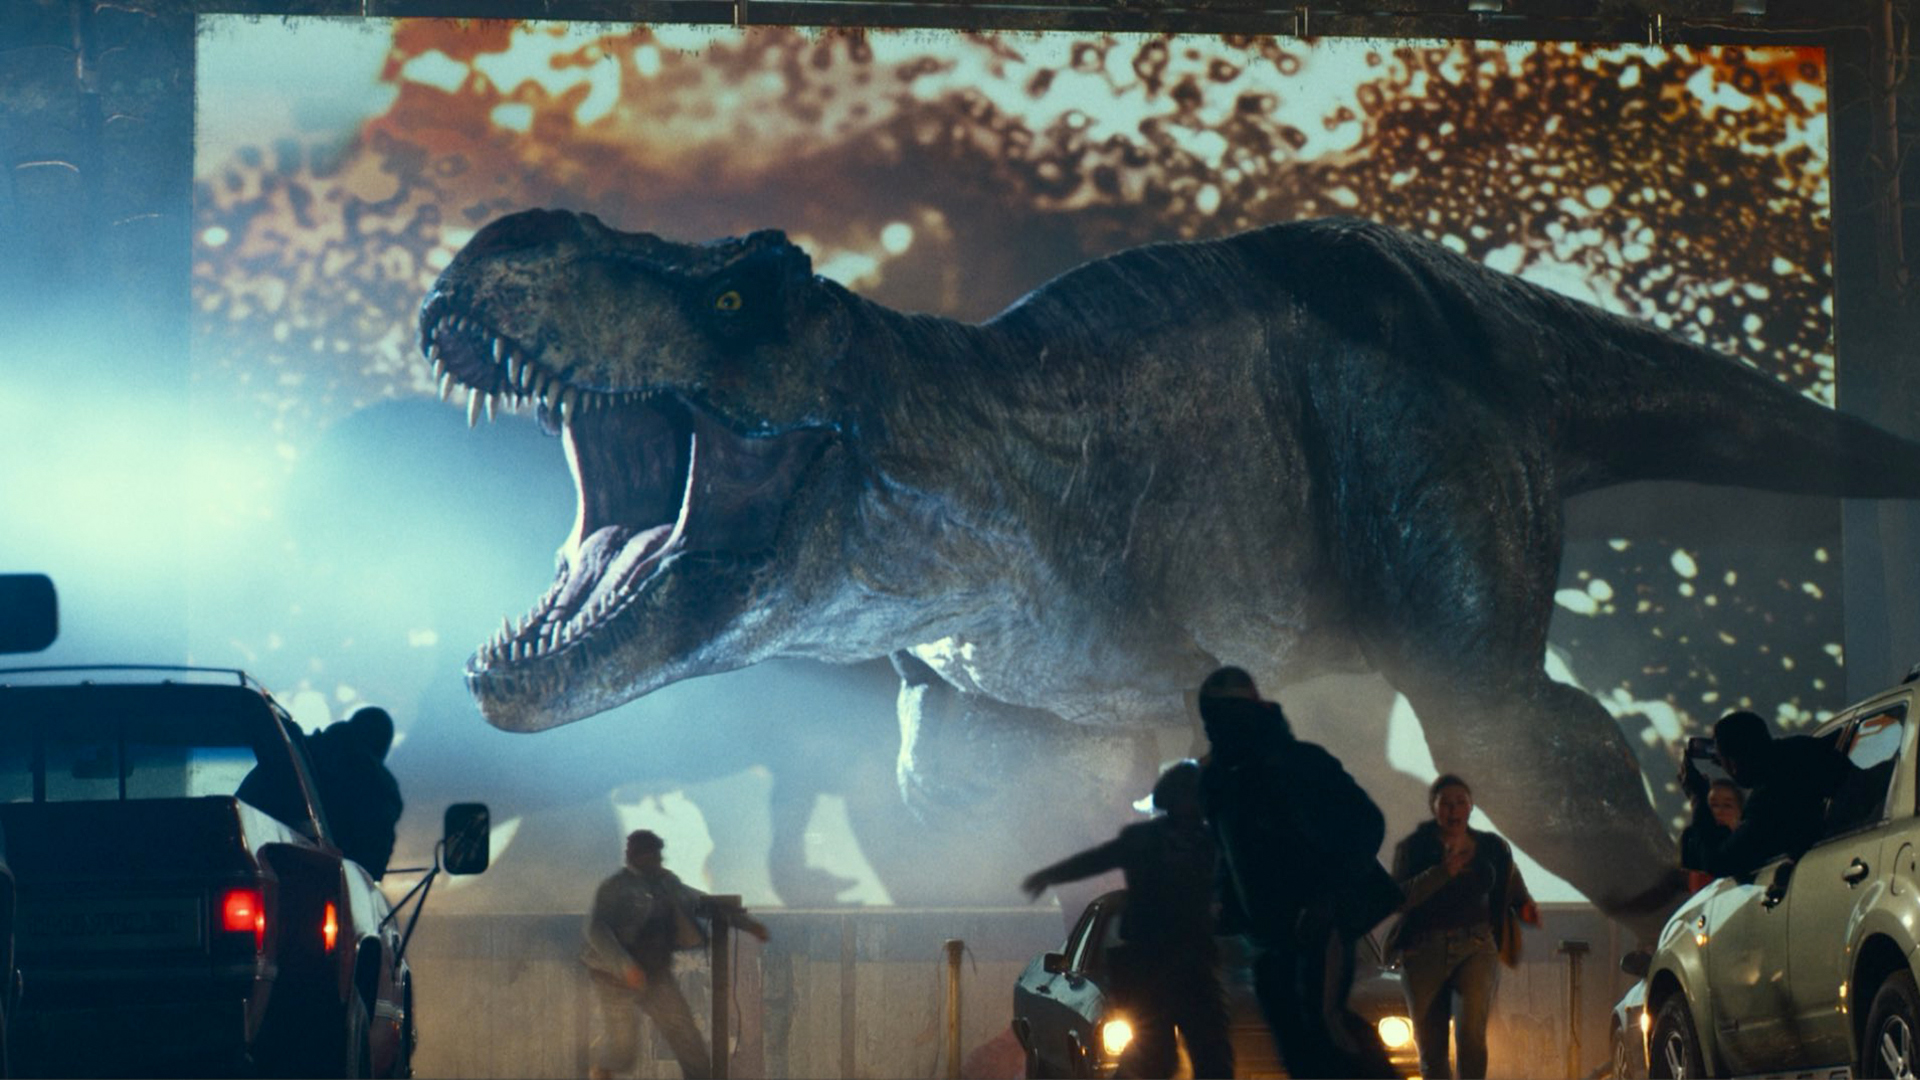 مراجعة فيلم Jurassic World Dominion - الختامية التي ستنهي رصيد السلسلة عند الجمهور 4